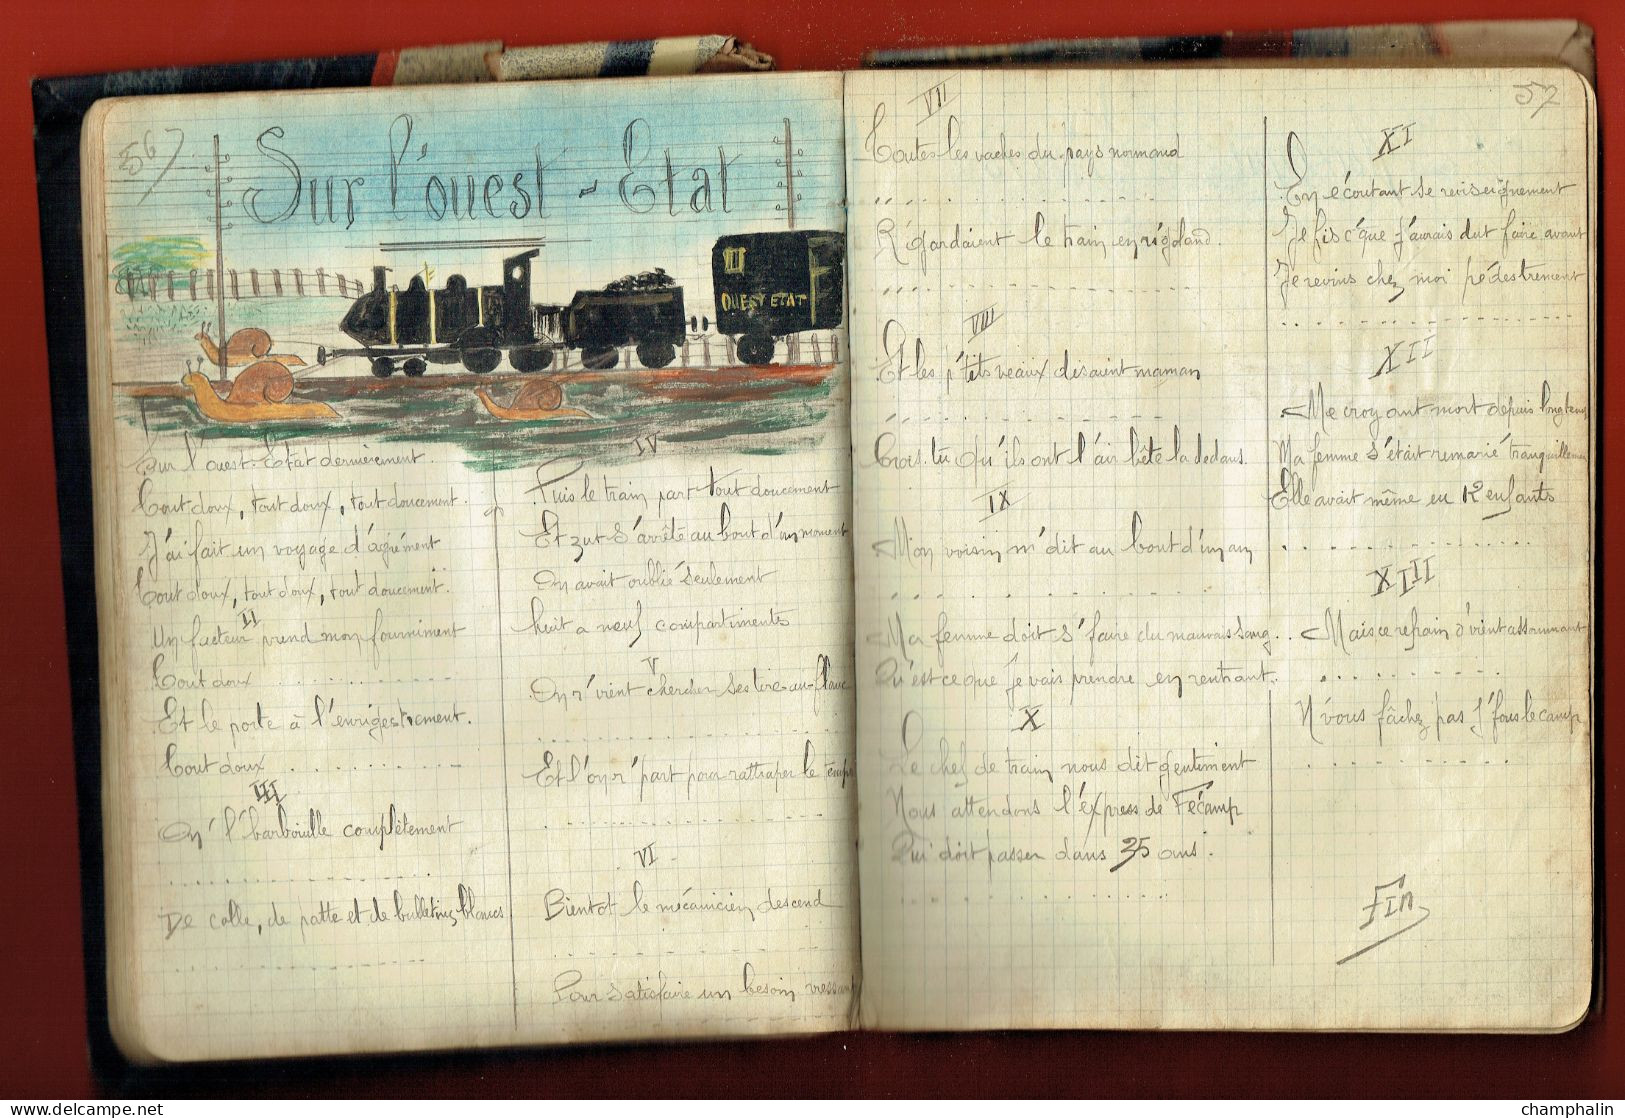 Cahier de chansonnettes d'un Soldat du 56ème Régiment d'Infanterie à Chalon-sur-Saône (71) - 1917 WWI - Avec dessins